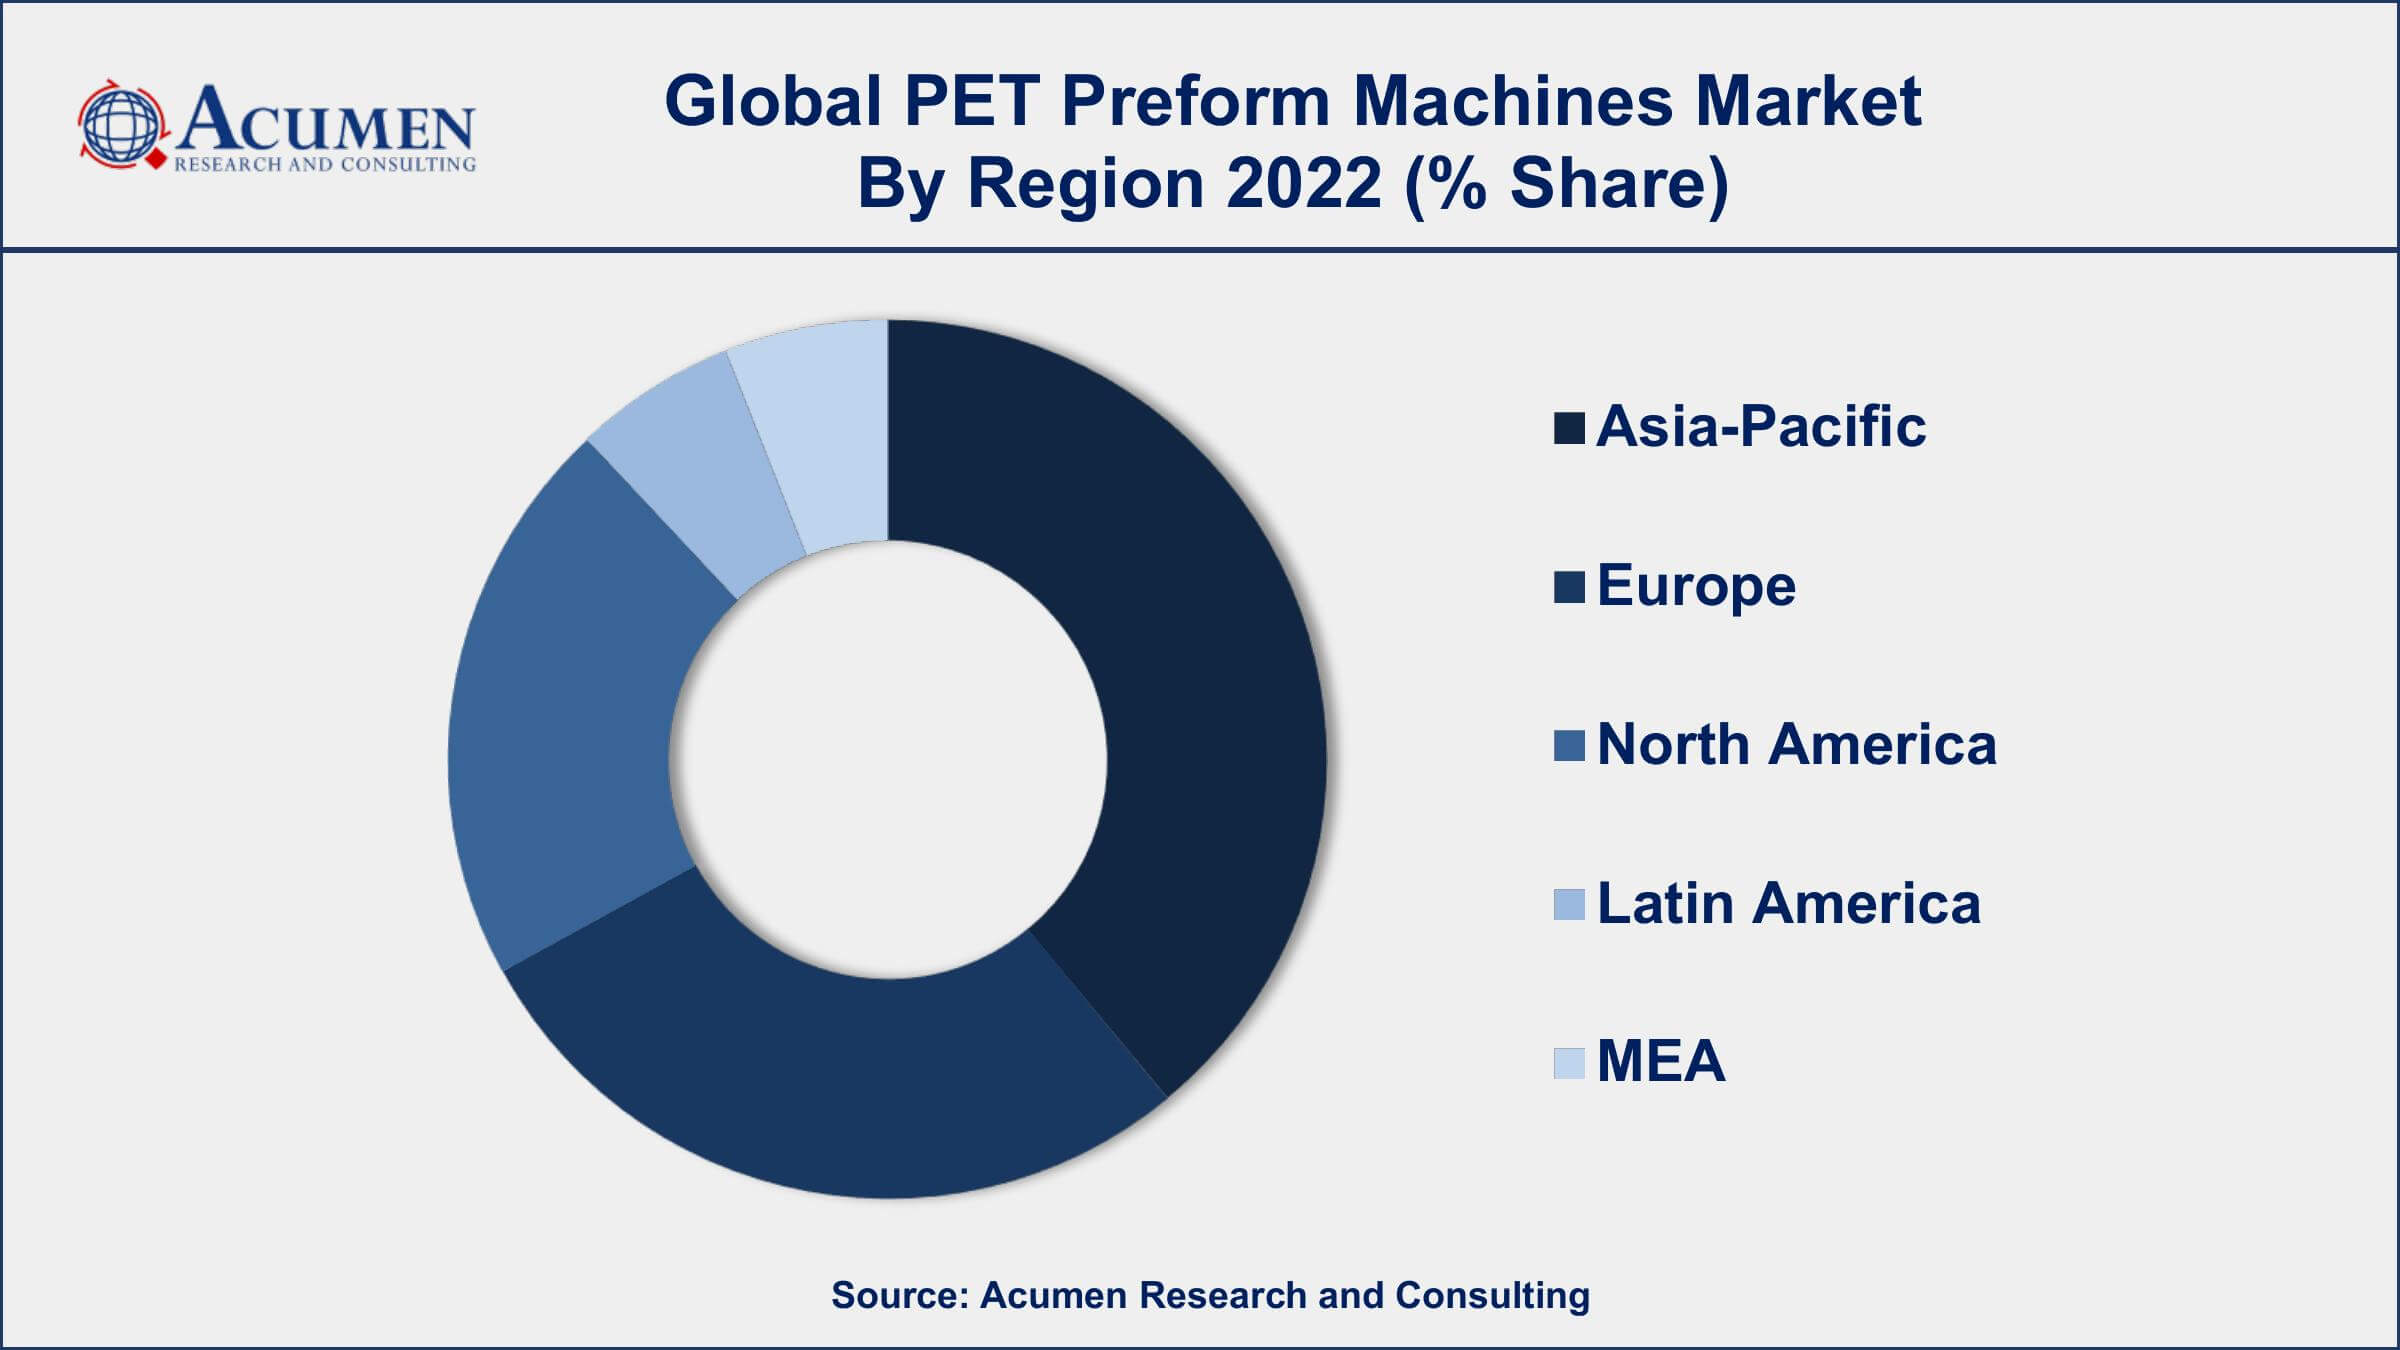 PET Preform Machines Market Drivers